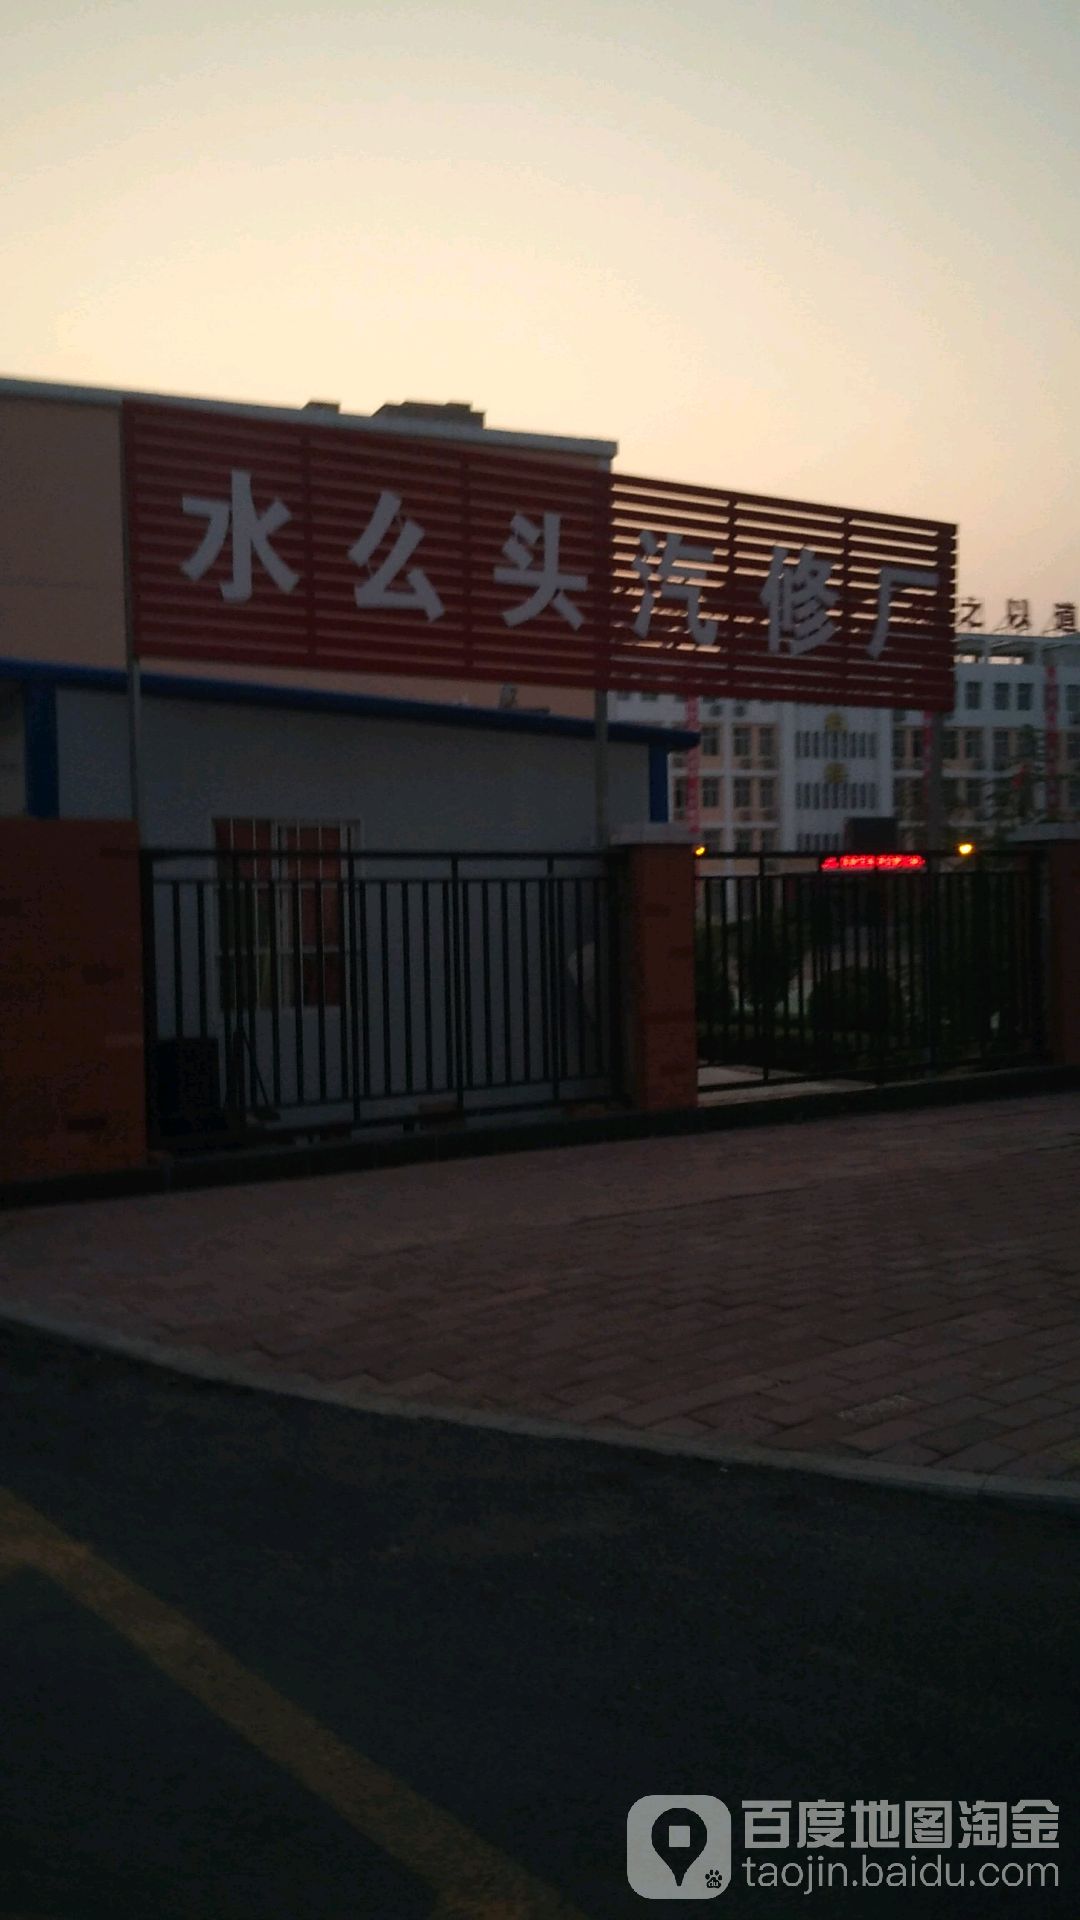 洛阳市宜阳县锦龙大道宜阳县技工学校东侧约40米